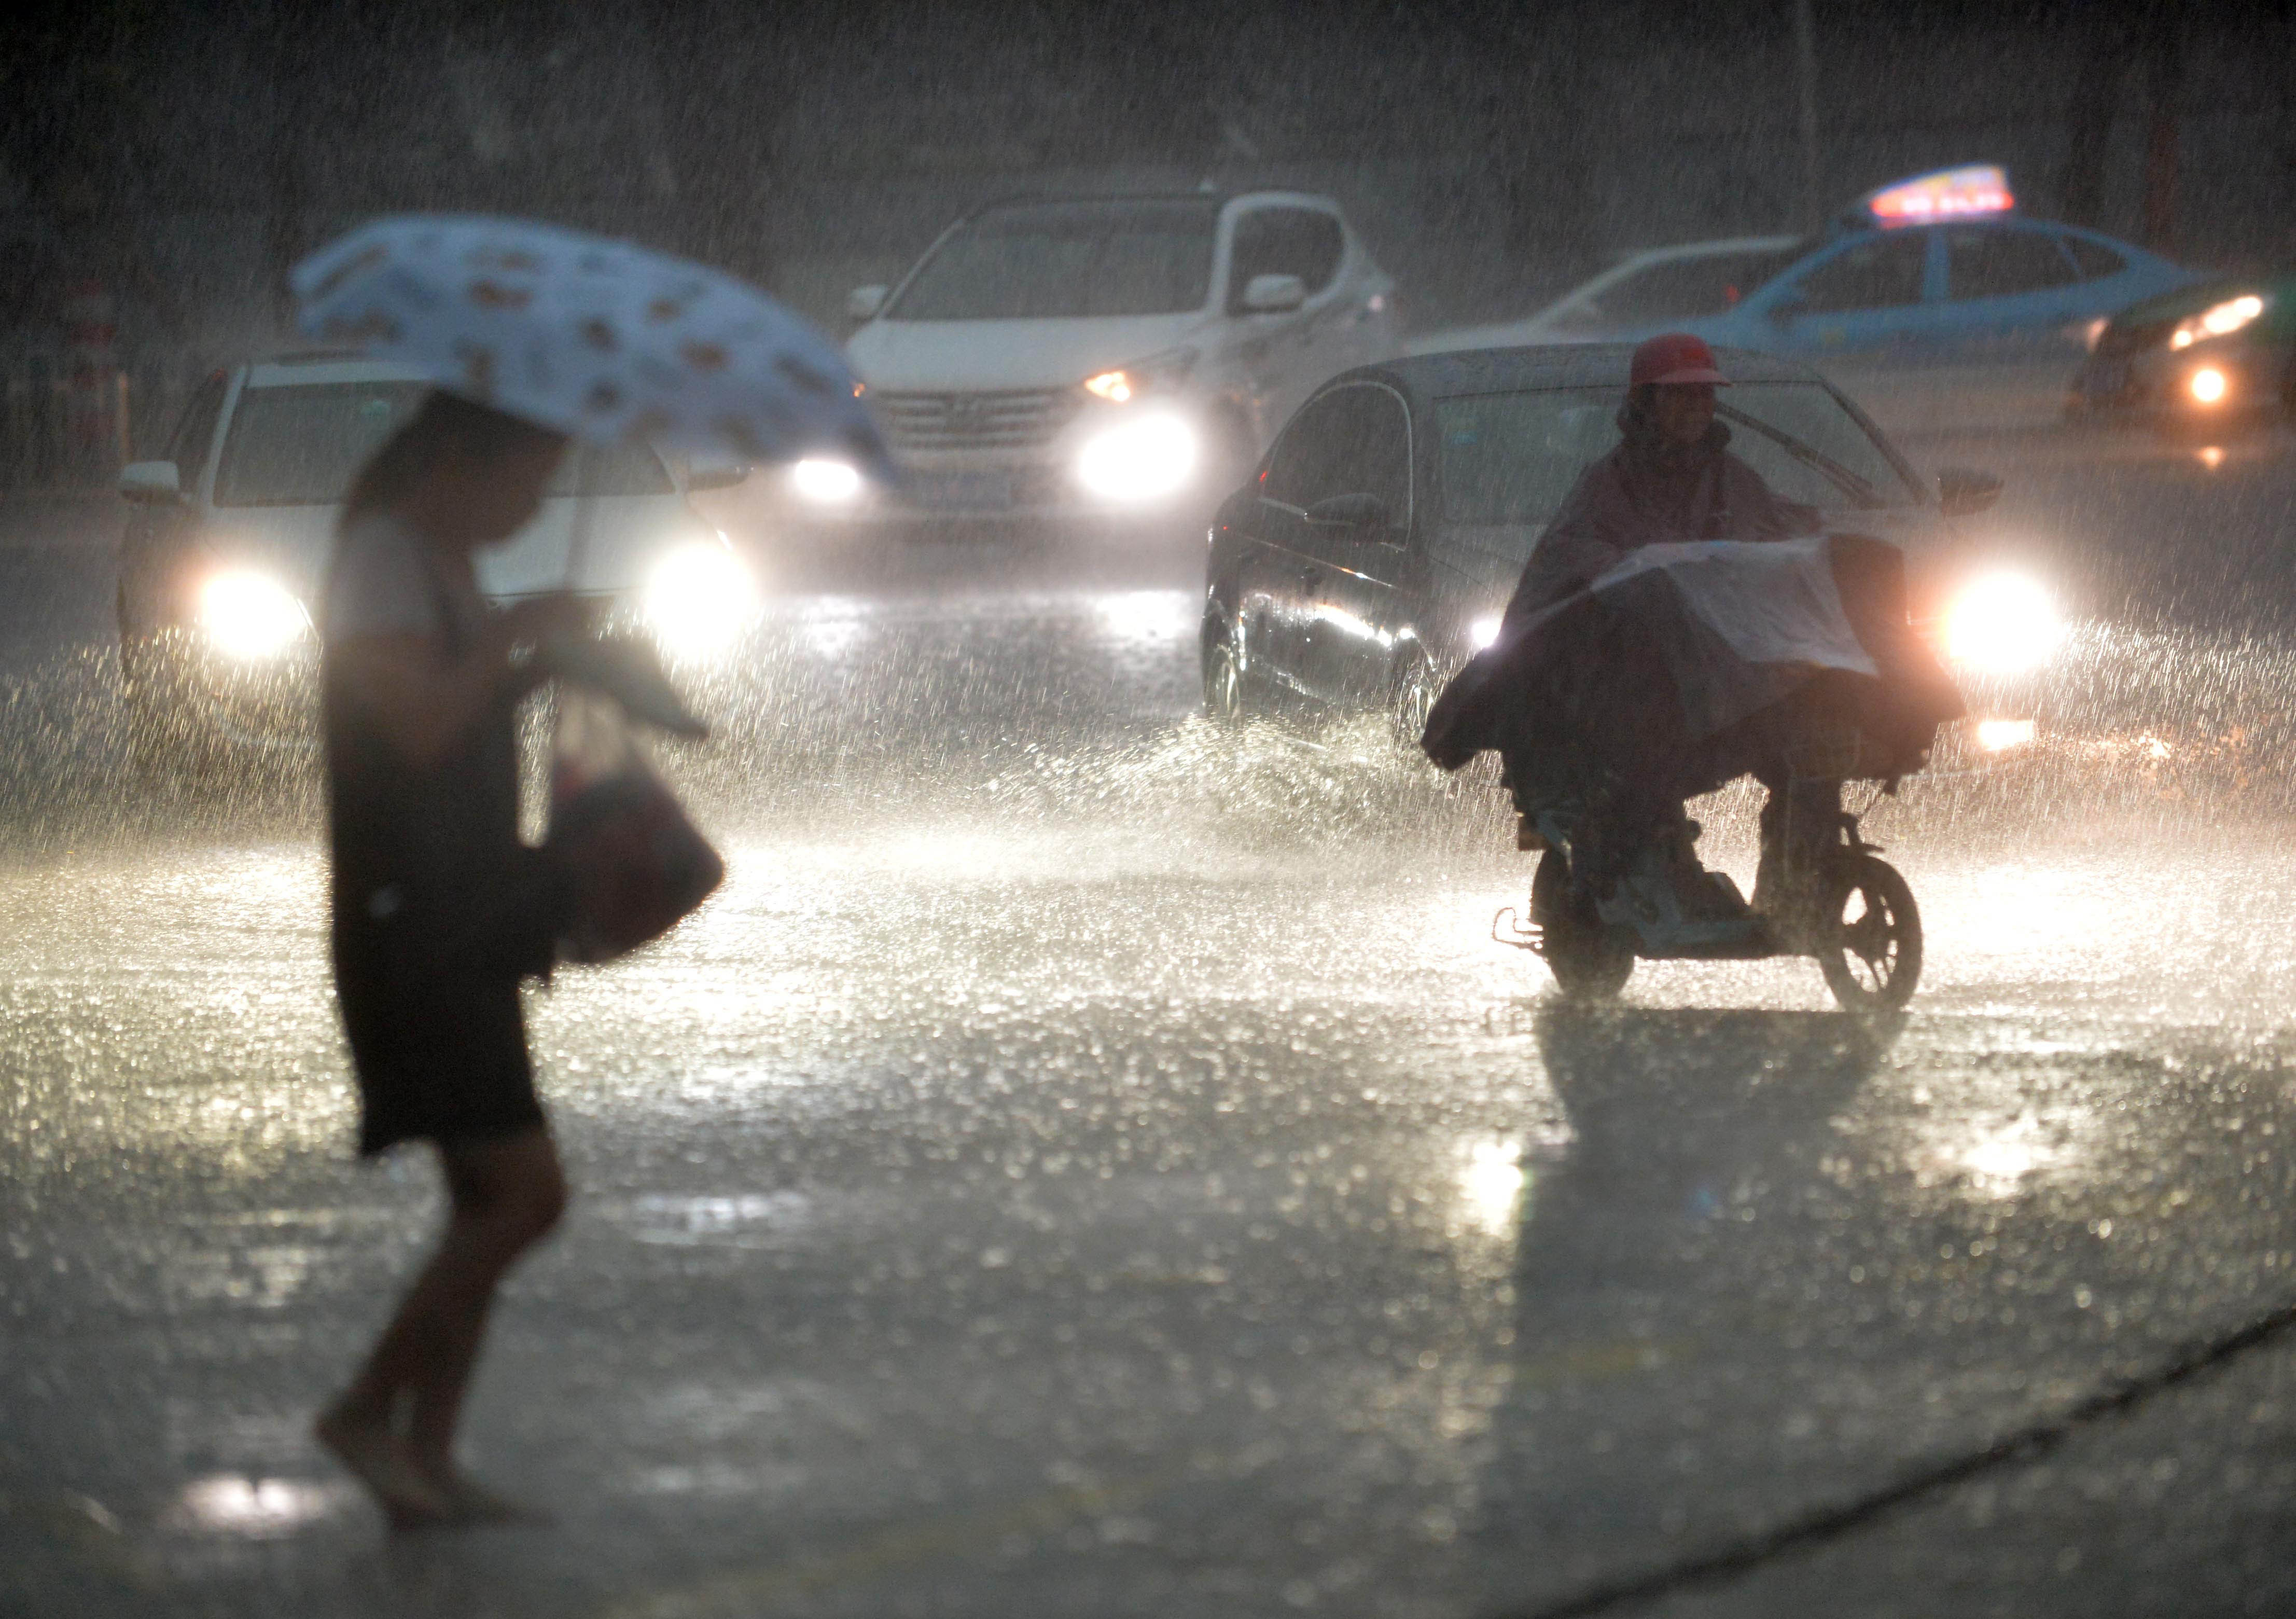 28日傍晚,受强雷雨云团影响,广州城区下起了倾盆大雨,海珠区石榴岗路